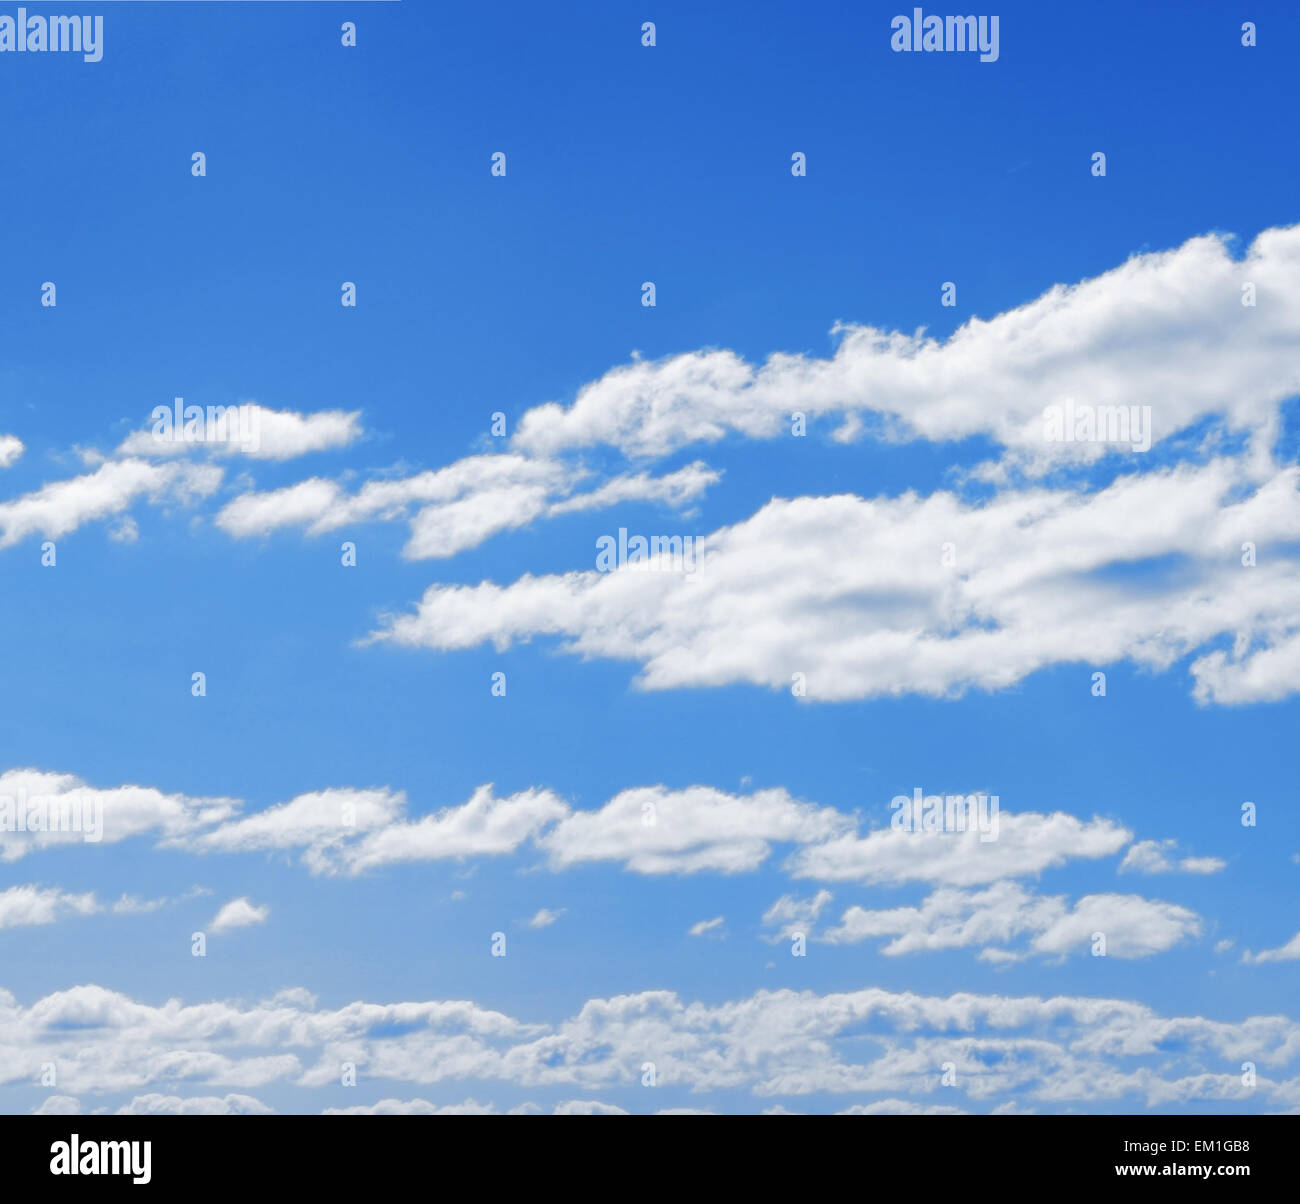 Blauer Himmel, Wolken und Sonne Licht. Sommer, Frühling Hintergrund Stockfoto